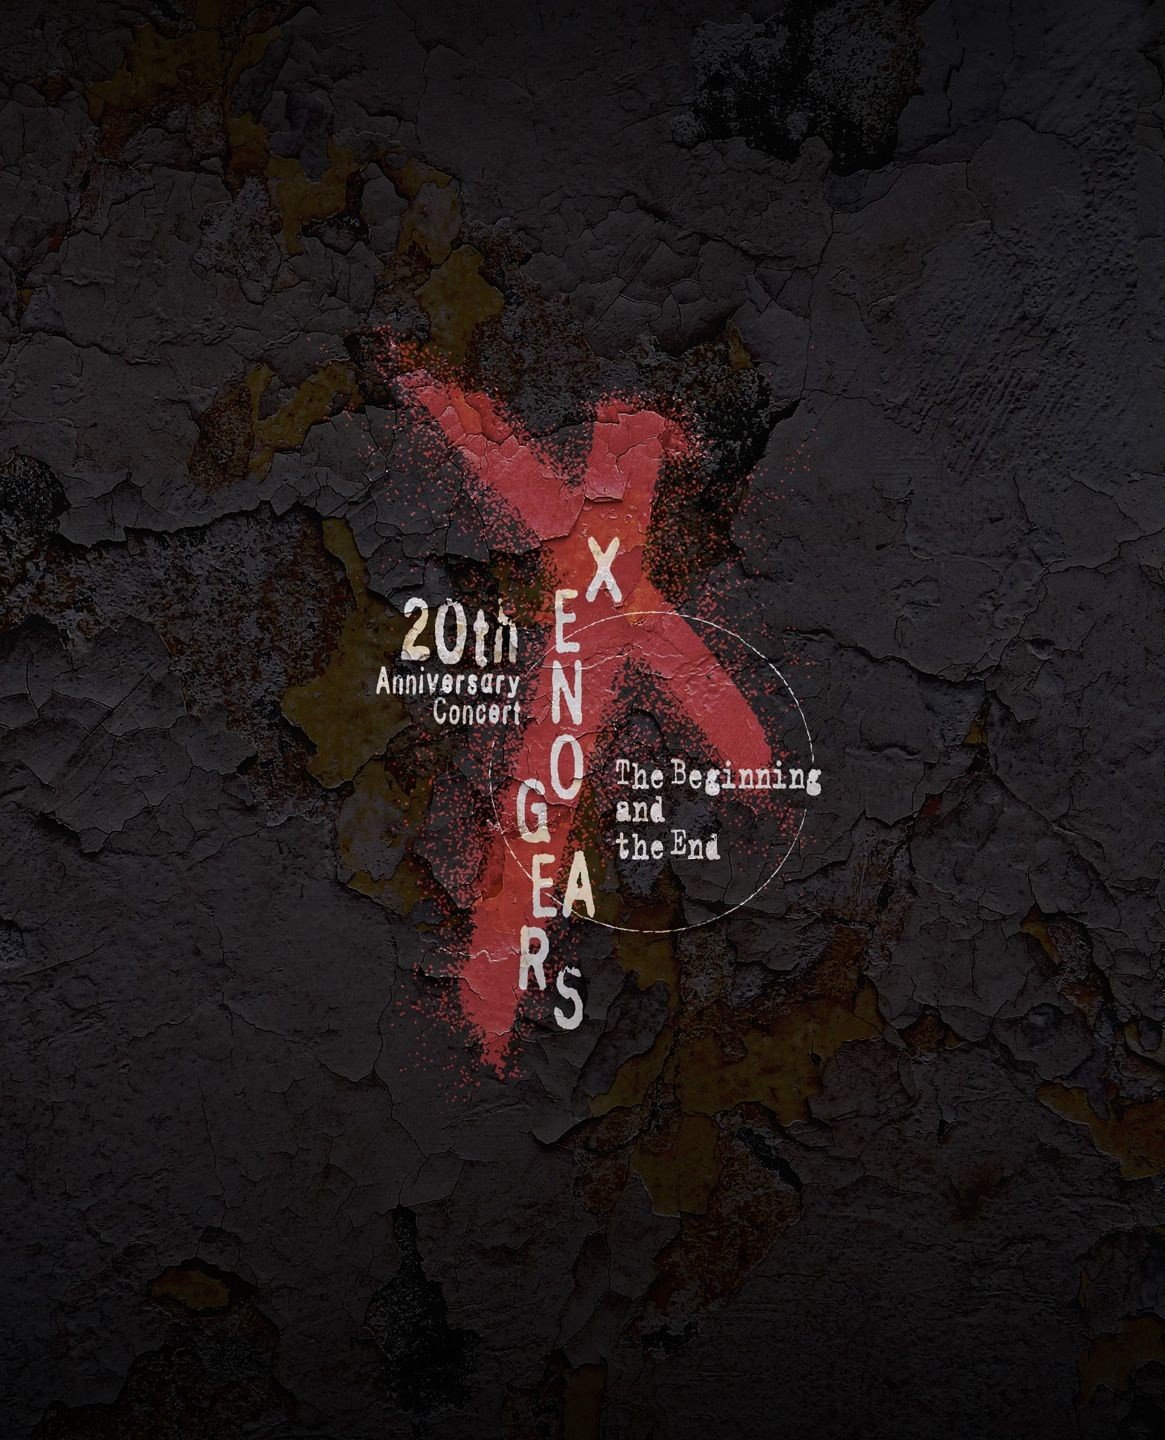 光田康典 (Yasunori Mitsuda) - Xenogears 20th Anniversary Concert -The Beginning and the End- (2019) [Blu-ray to FLAC 24bit/96kHz]